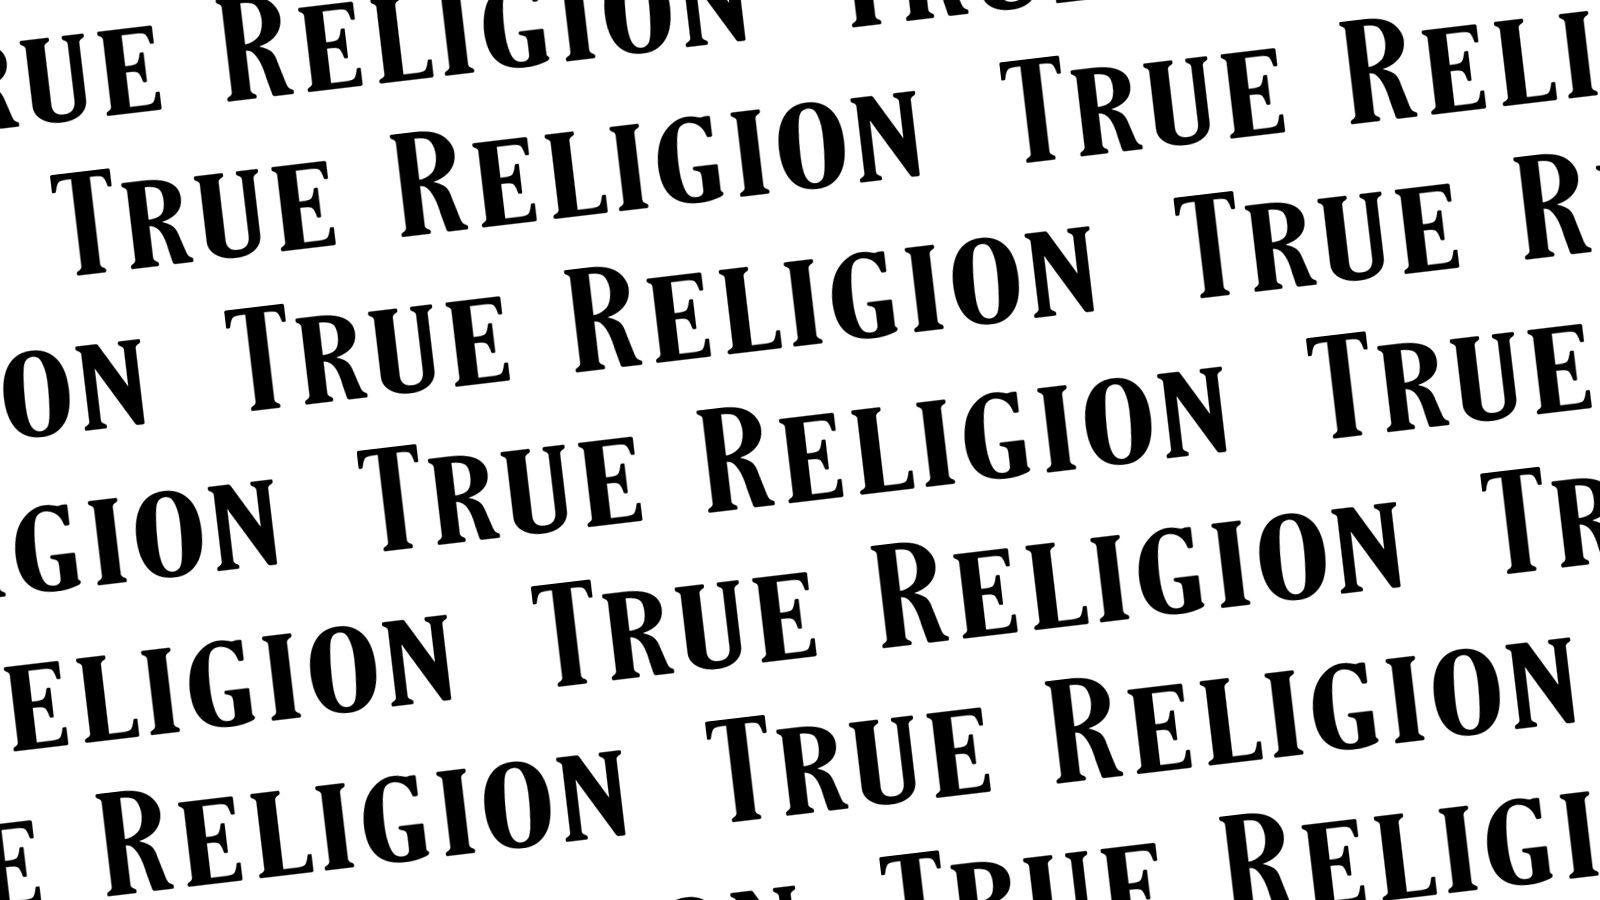 True Religion HD wallpaper  Pxfuel